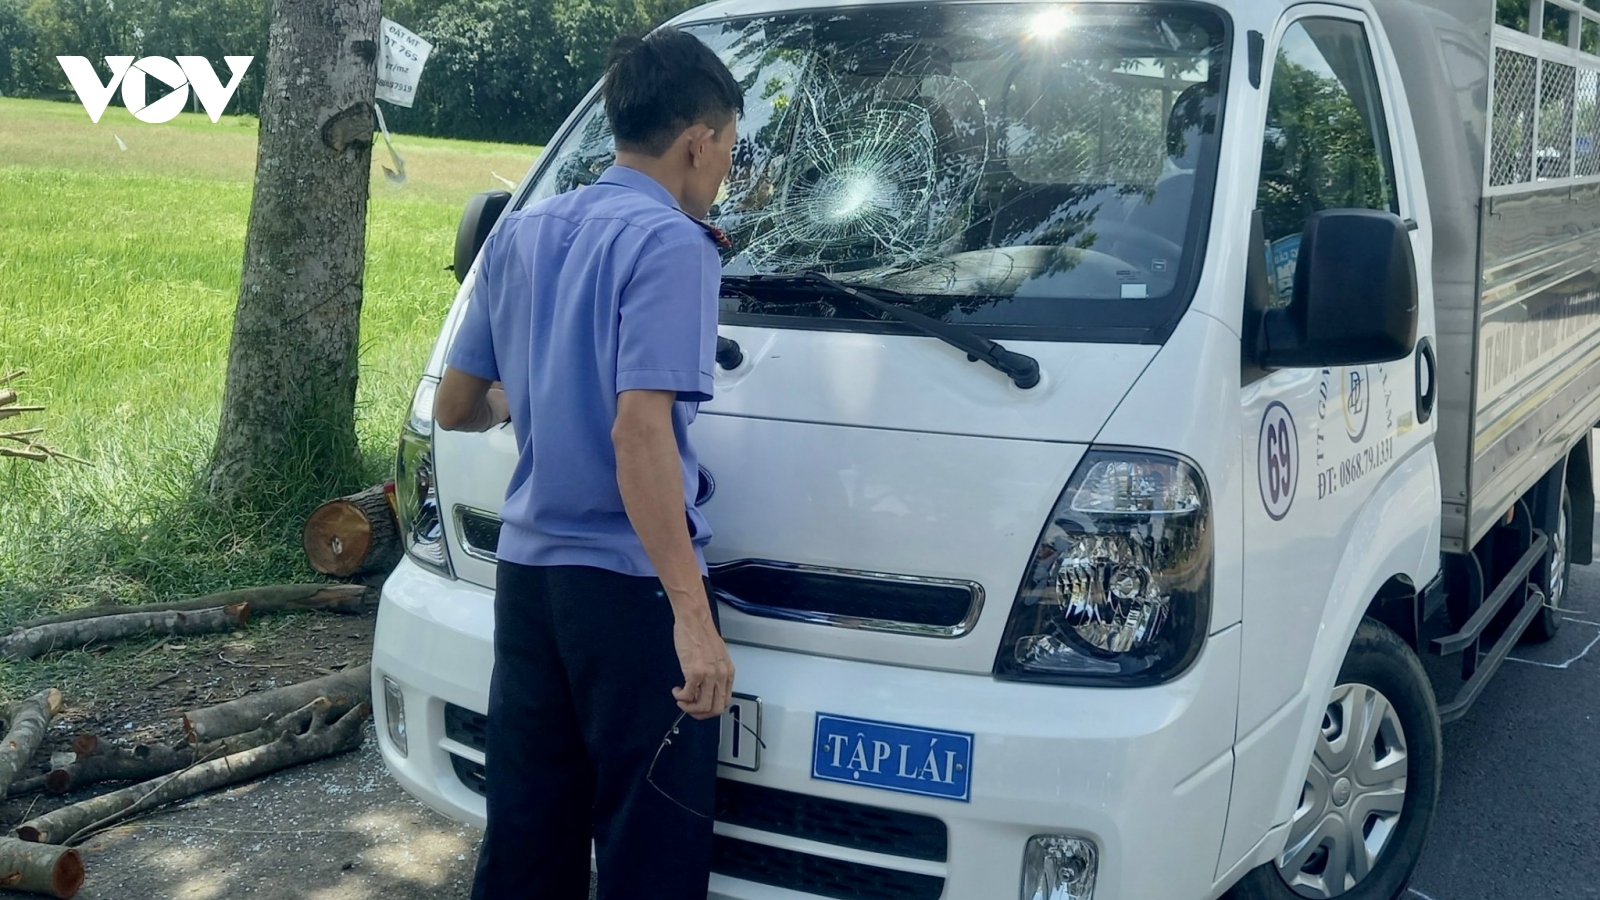 Tài xế xe ô tô tập lái gây tai nạn chết người ở Bà Rịa - Vũng Tàu